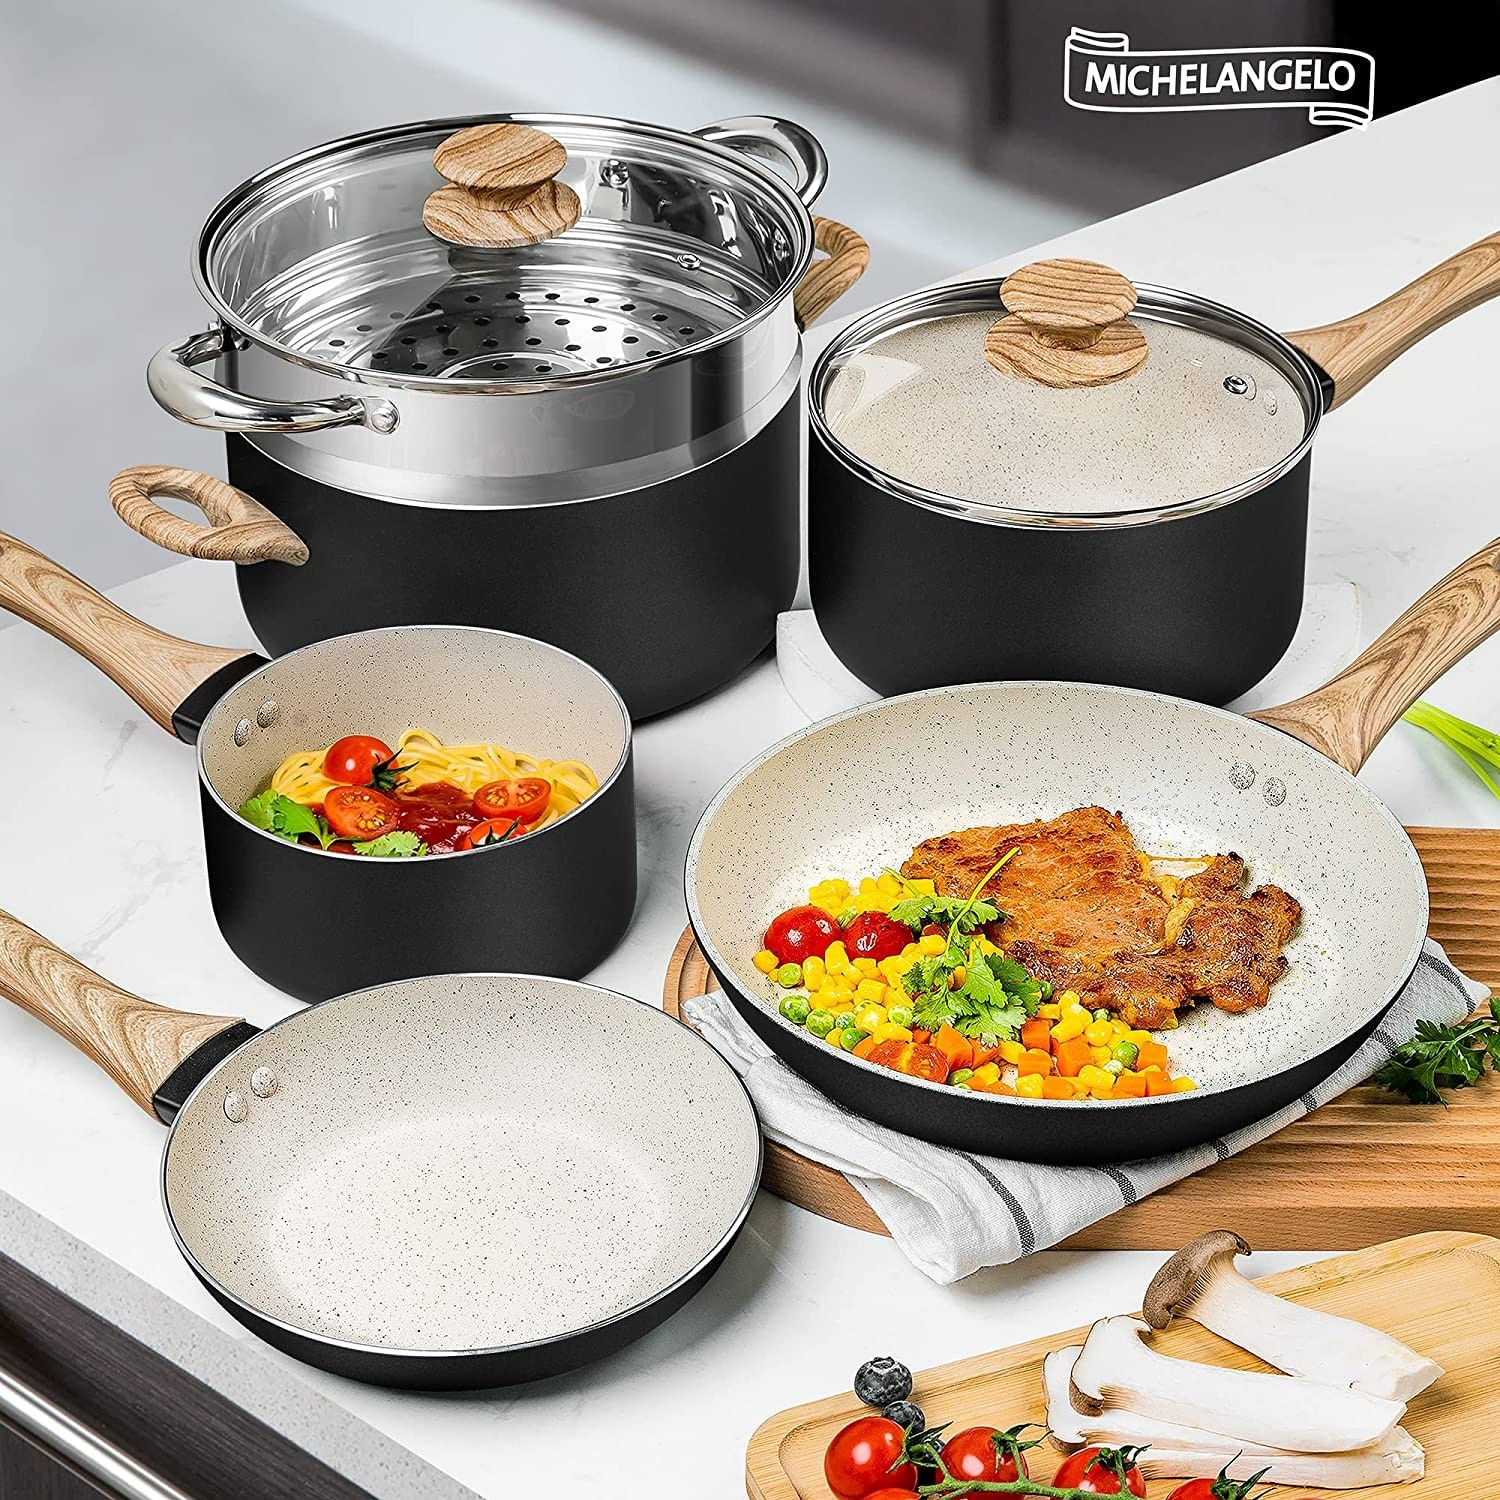 MICHELANGELO Pots and Pans Set Nonstick, Granite Cookware Set 12 Pcs Non  Toxic Cookware Set Induction Compatible, Black Granite Pots and Pans Set  with